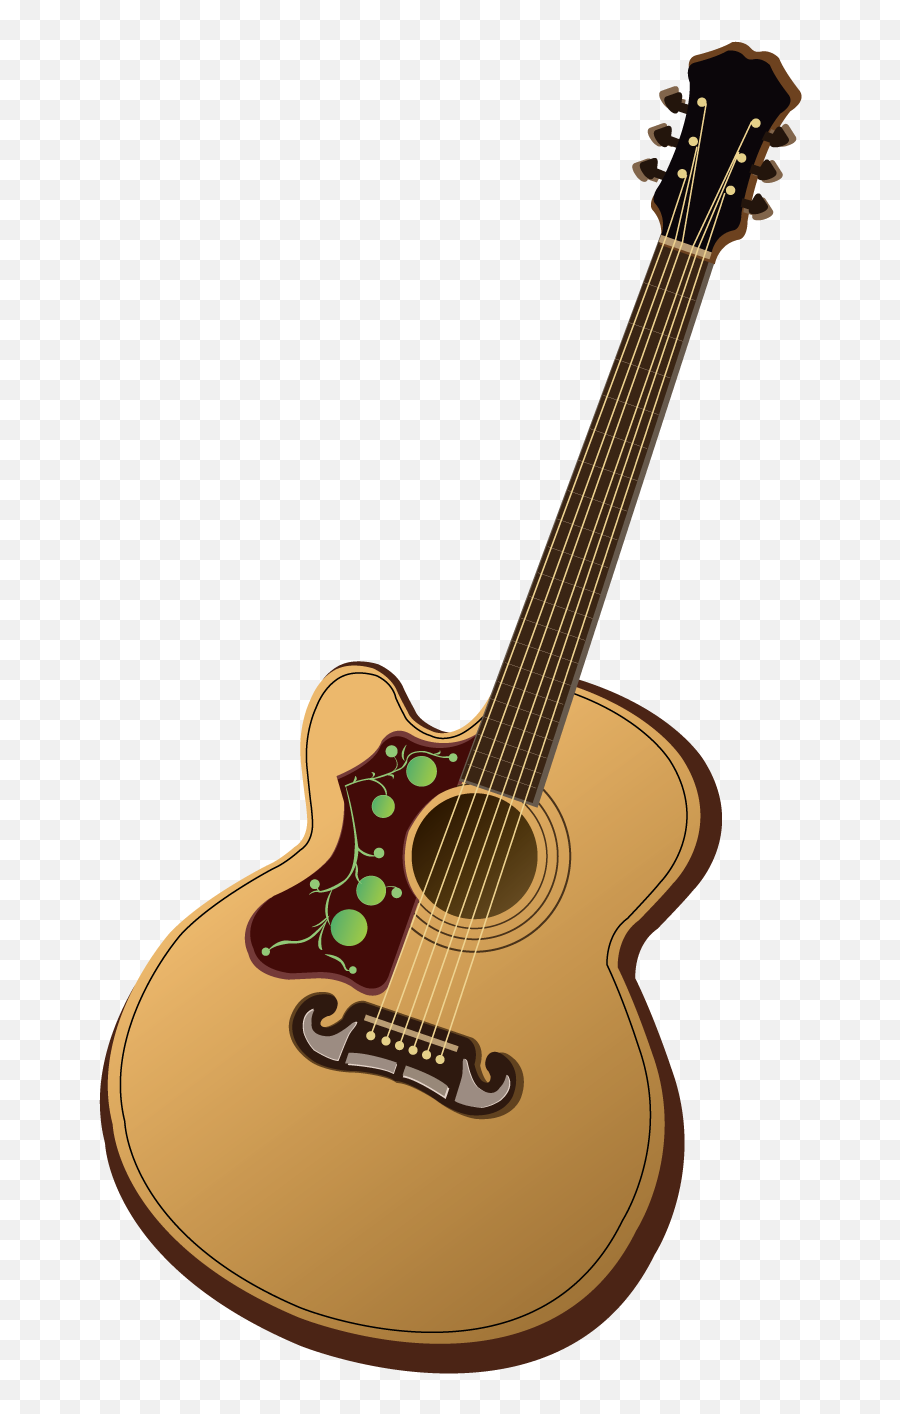 Png Royalty Free Download Pixabay Folk - Acoustic Guitar Dan Ghi Ta Png Emoji,Acoustic Guitar Png